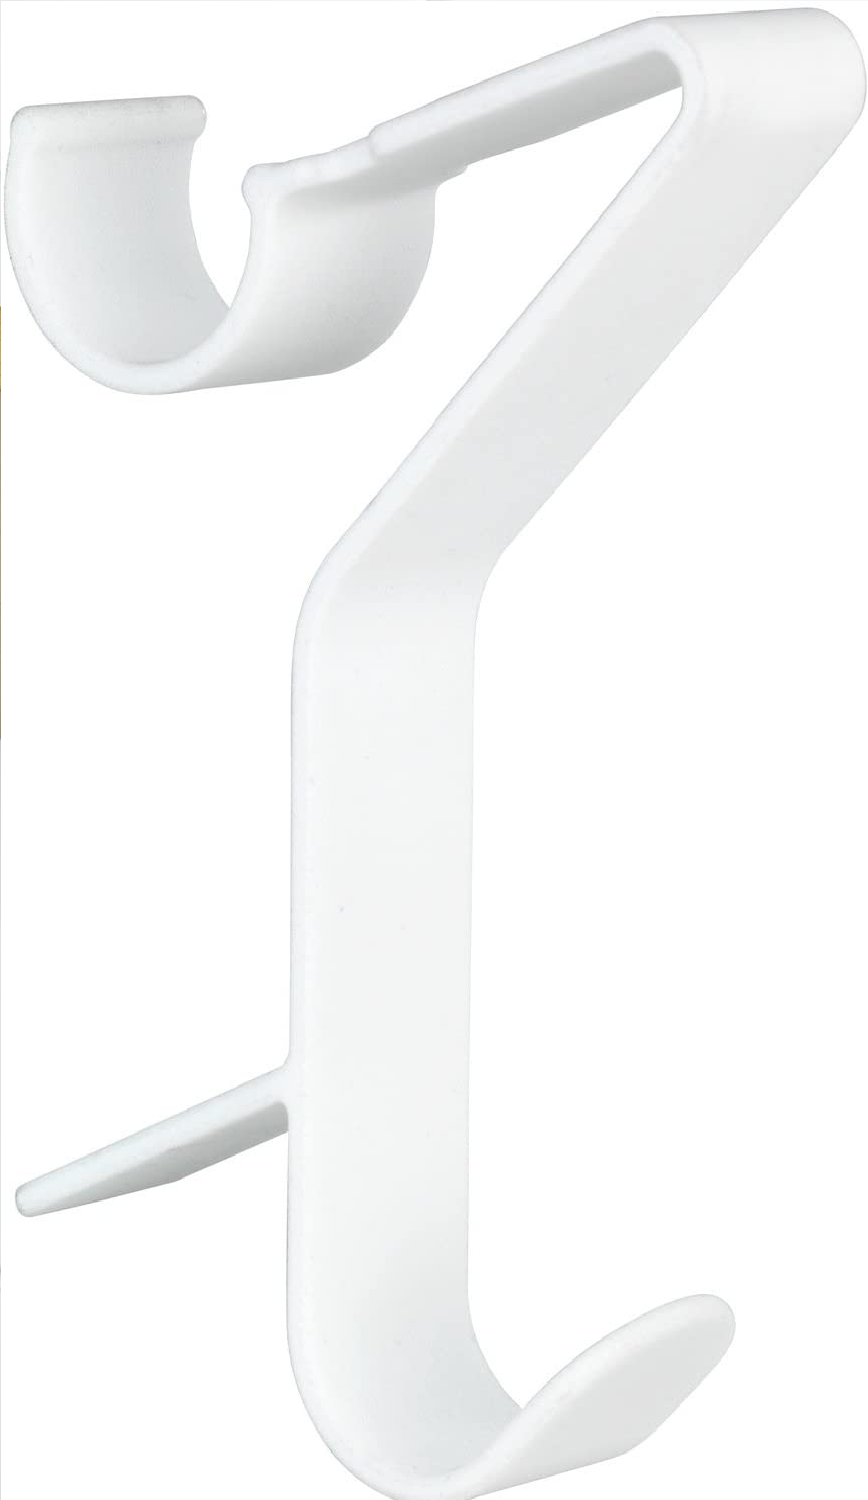 Haken für Handtuchheizkörper Universal Flexi - Heizkörperhaken, Kunststoff (ABS), 2.5 x 13.5 x 8.5 cm, Weiß